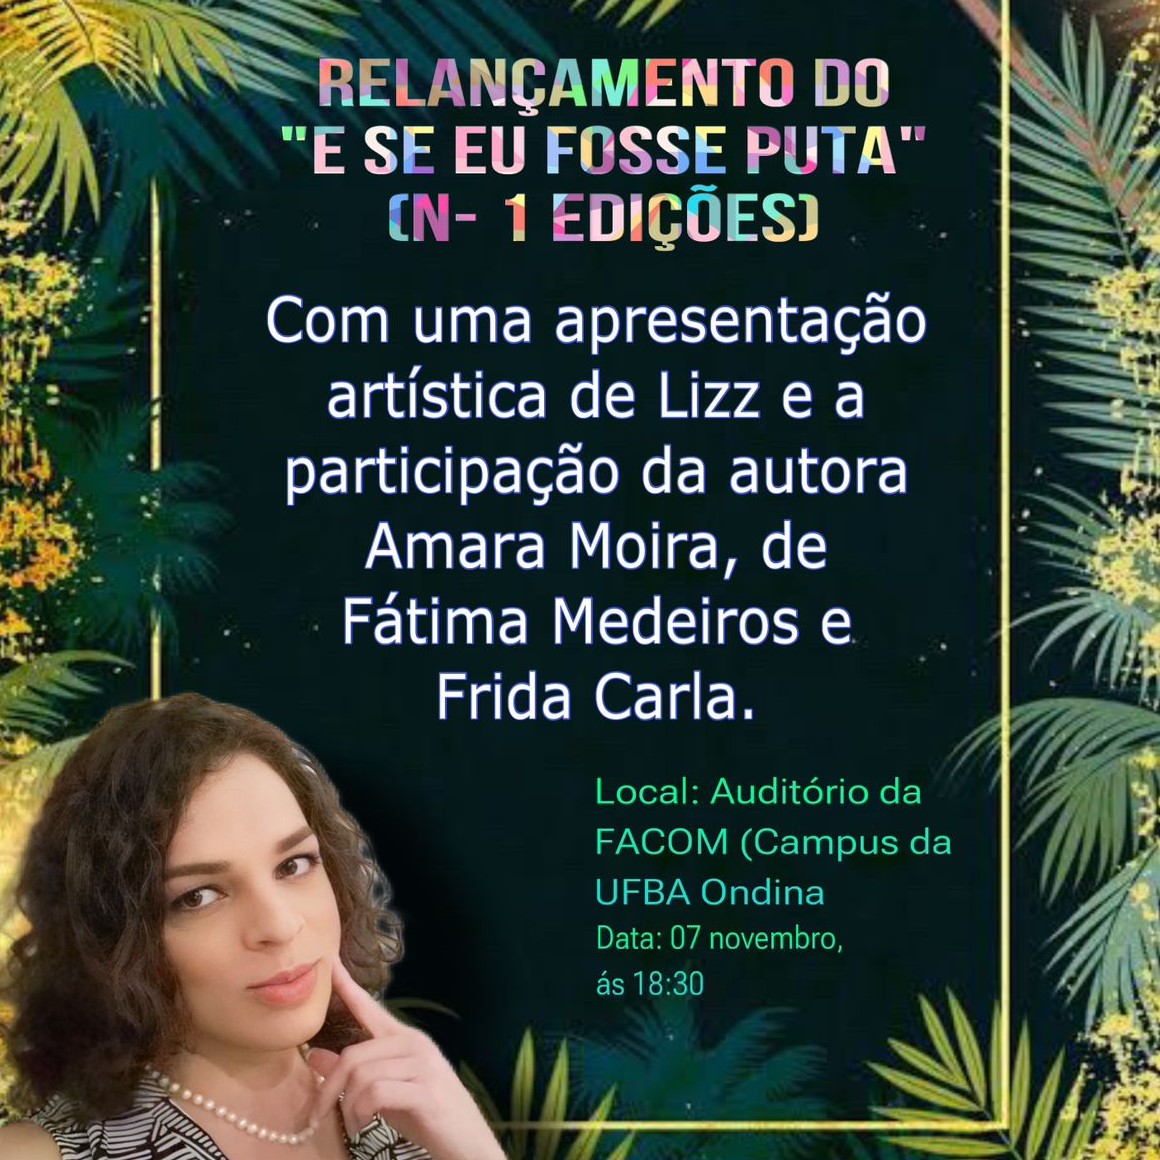 NuCuS promove debate e lançamento de nova edição do livro “E seu eu fosse puta”, de Amara Moira